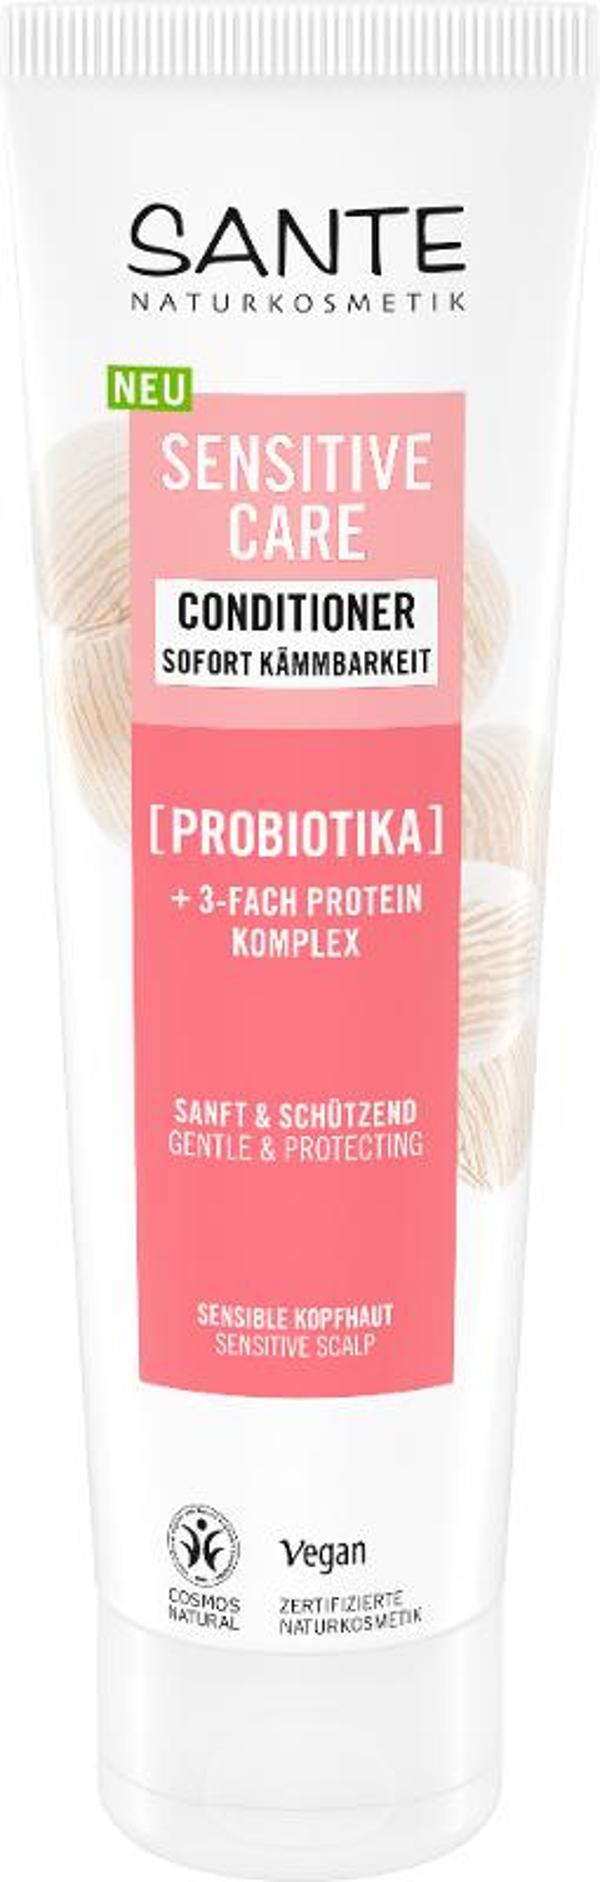 Produktfoto zu Sensitive Care Spülung Probiotika 150ml Sante